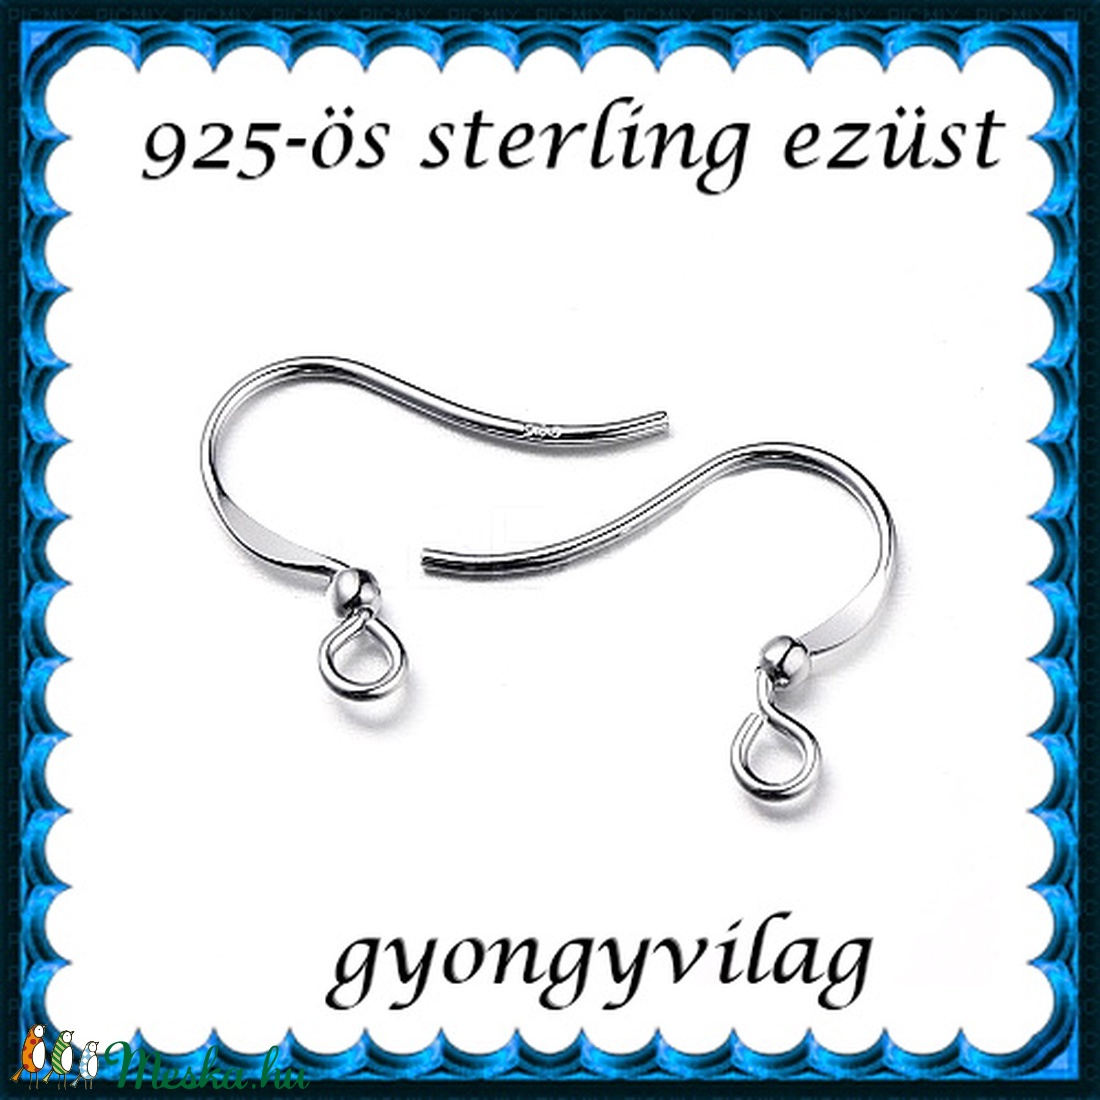  925-ös sterling ezüst ékszerkellék: fülbevalóalap akasztós EFK A 96r - gyöngy, ékszerkellék - egyéb alkatrész - Meska.hu